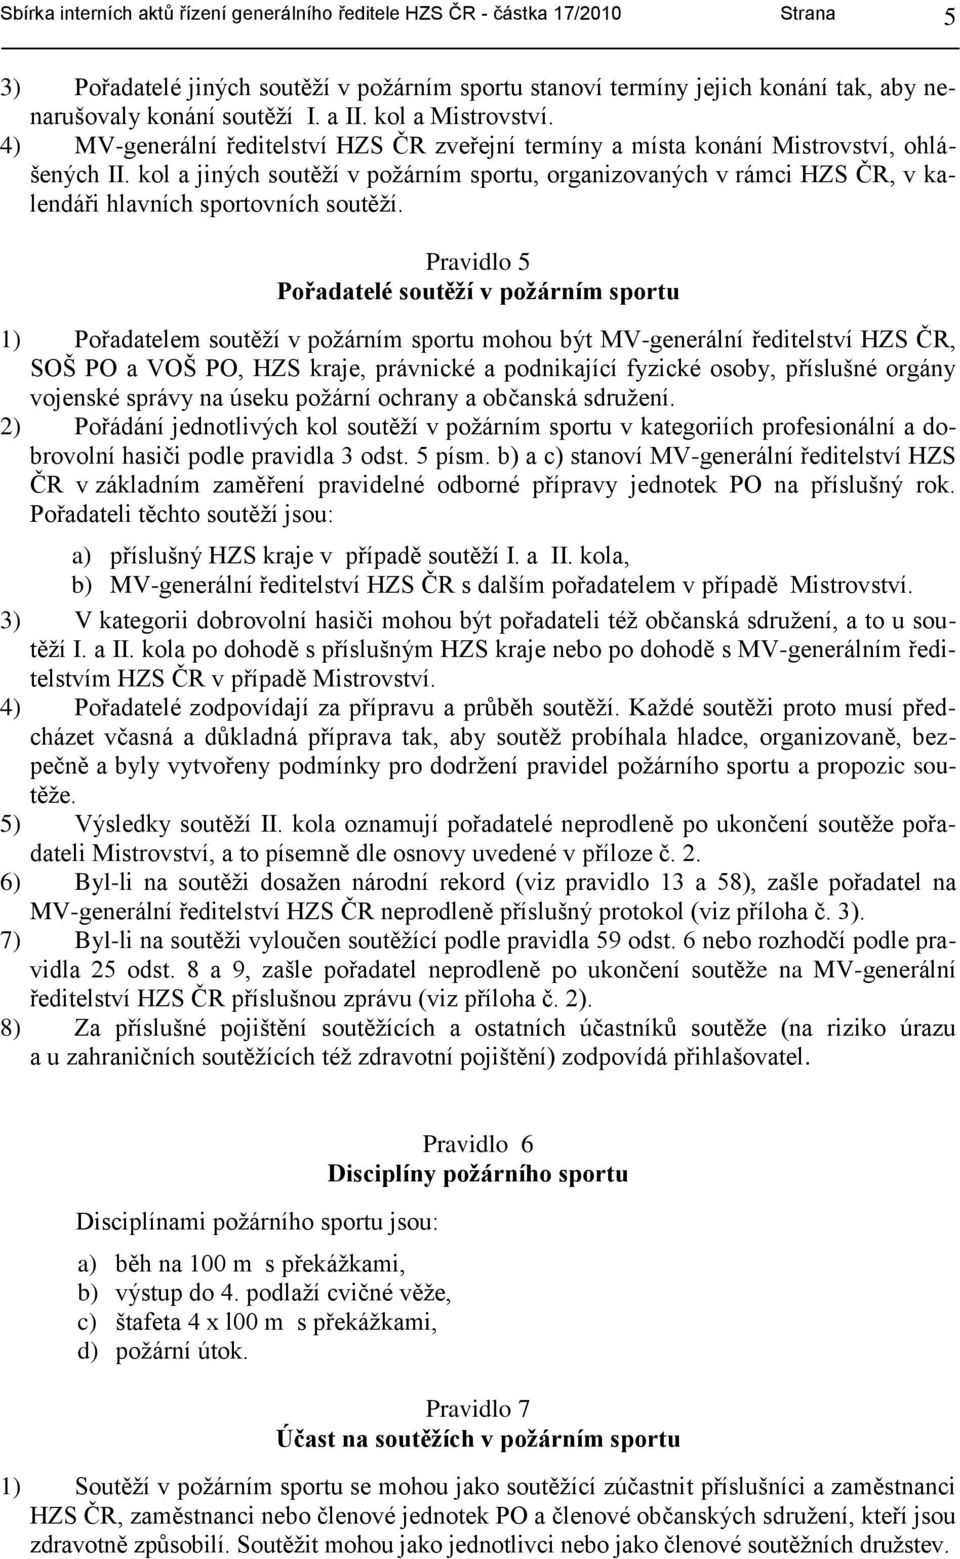 kol a jiných soutěţí v poţárním sportu, organizovaných v rámci HZS ČR, v kalendáři hlavních sportovních soutěţí.